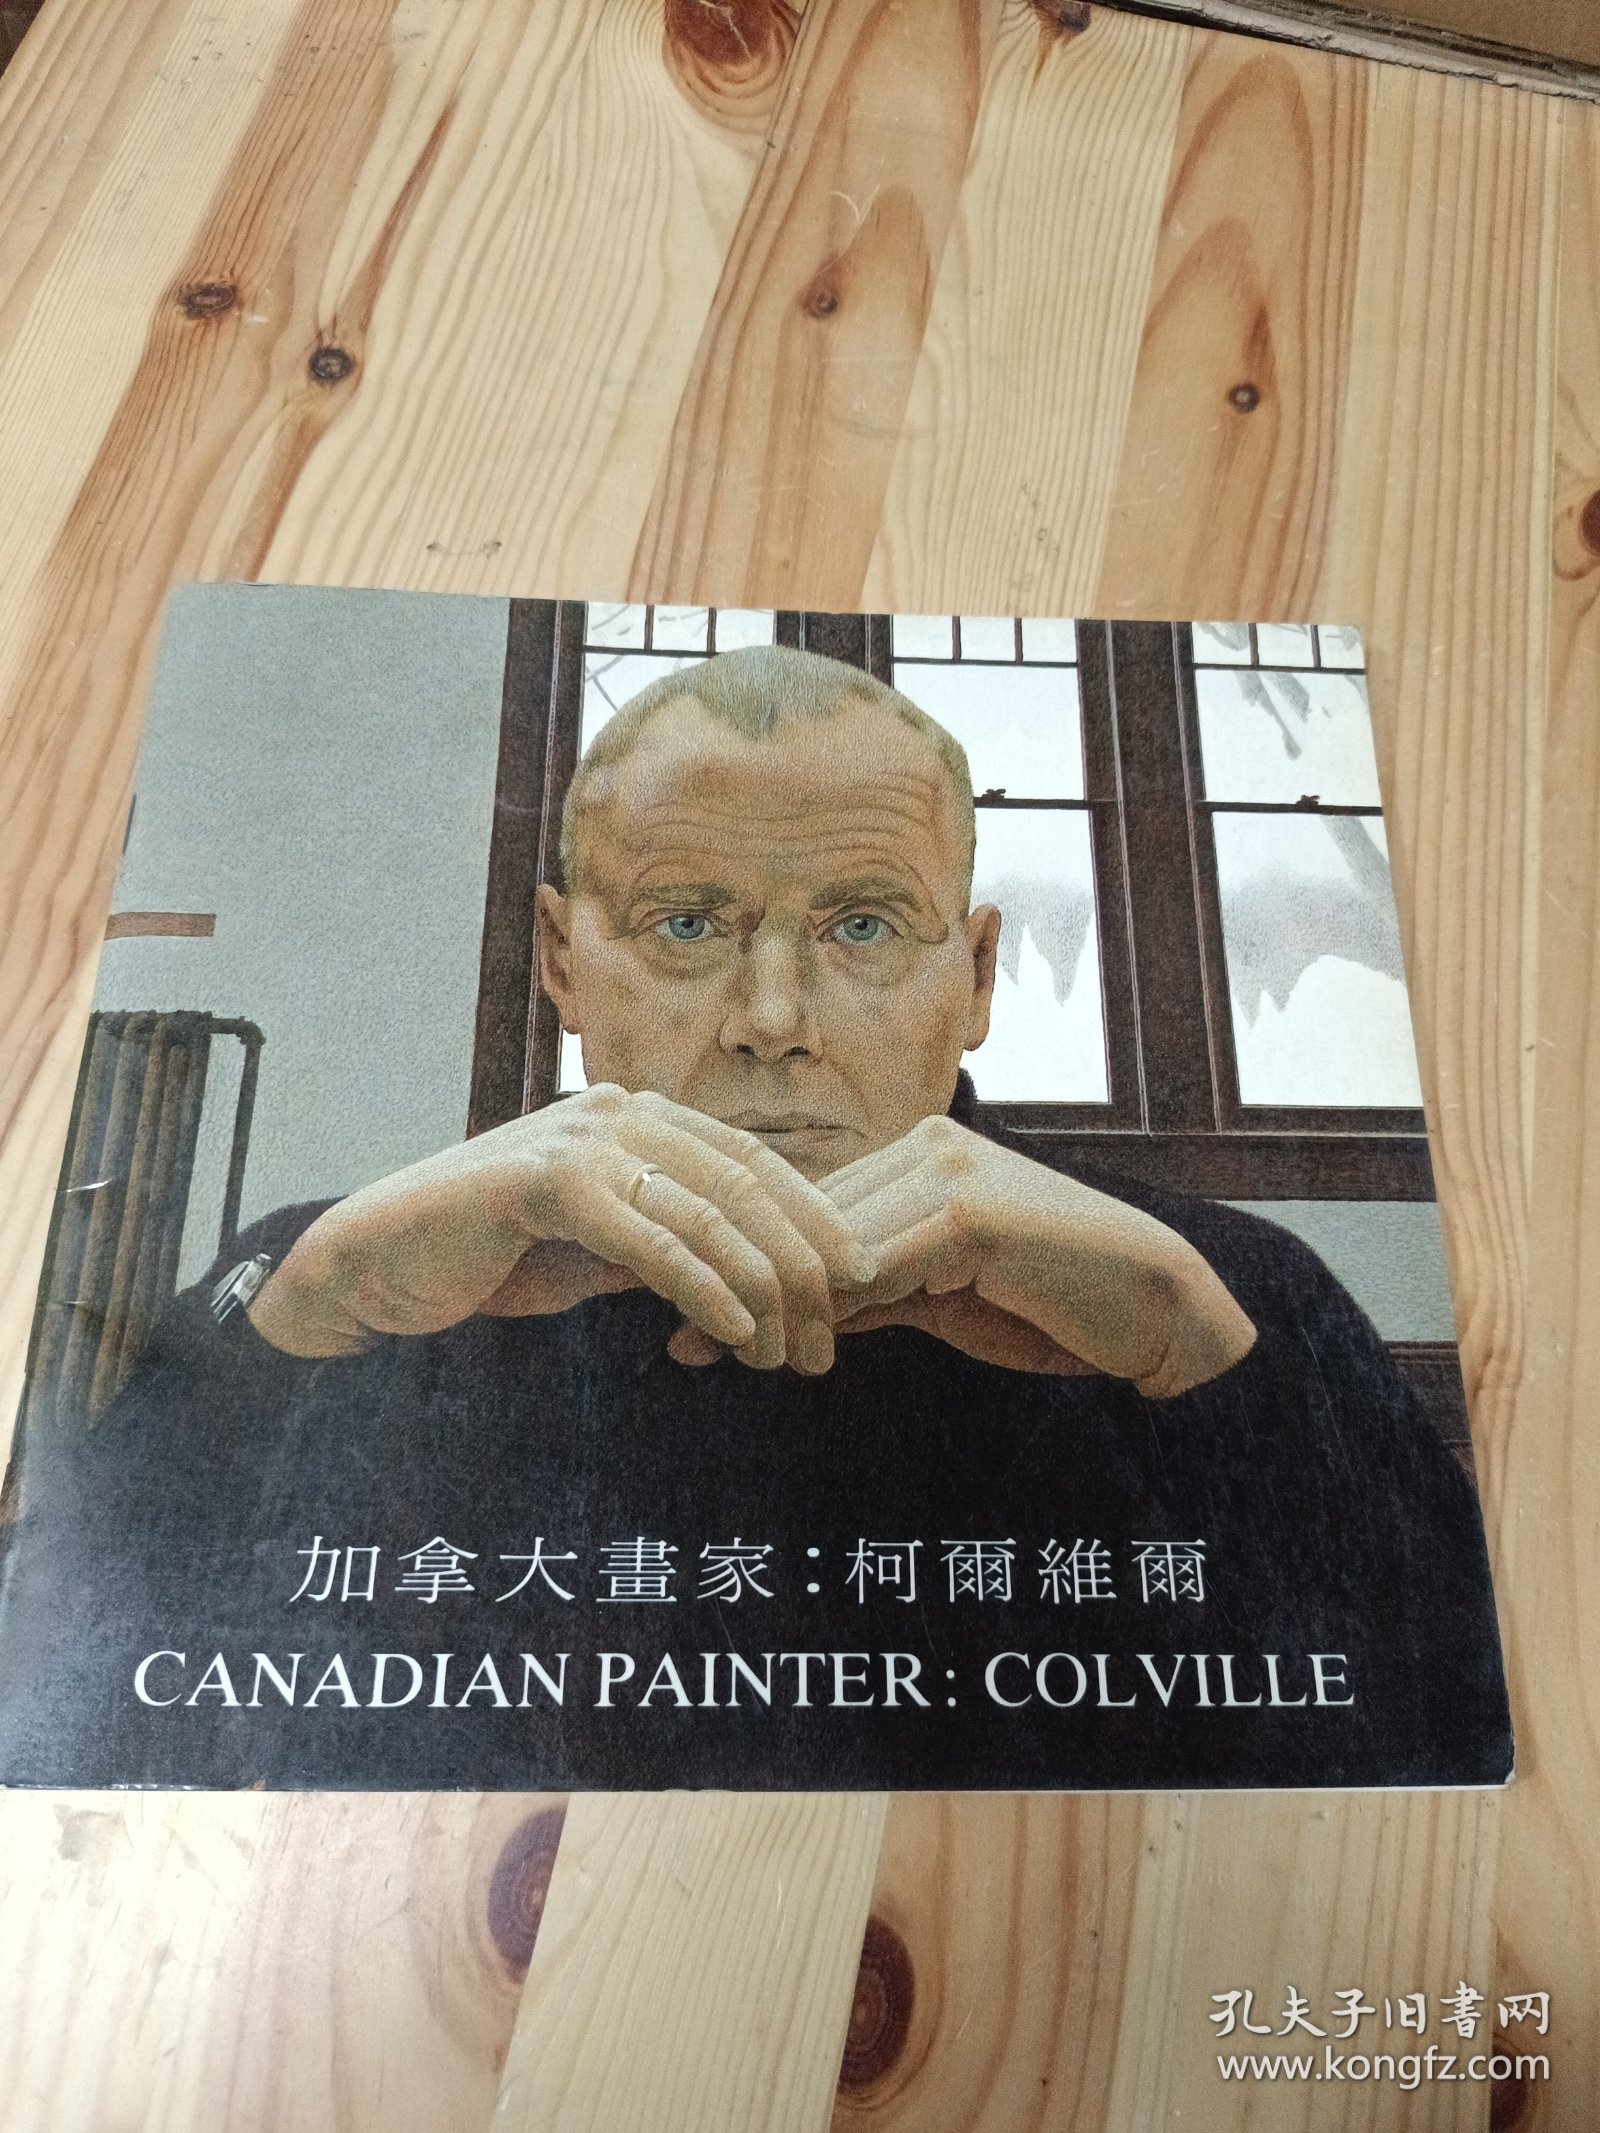 加拿大画家柯尔维尔